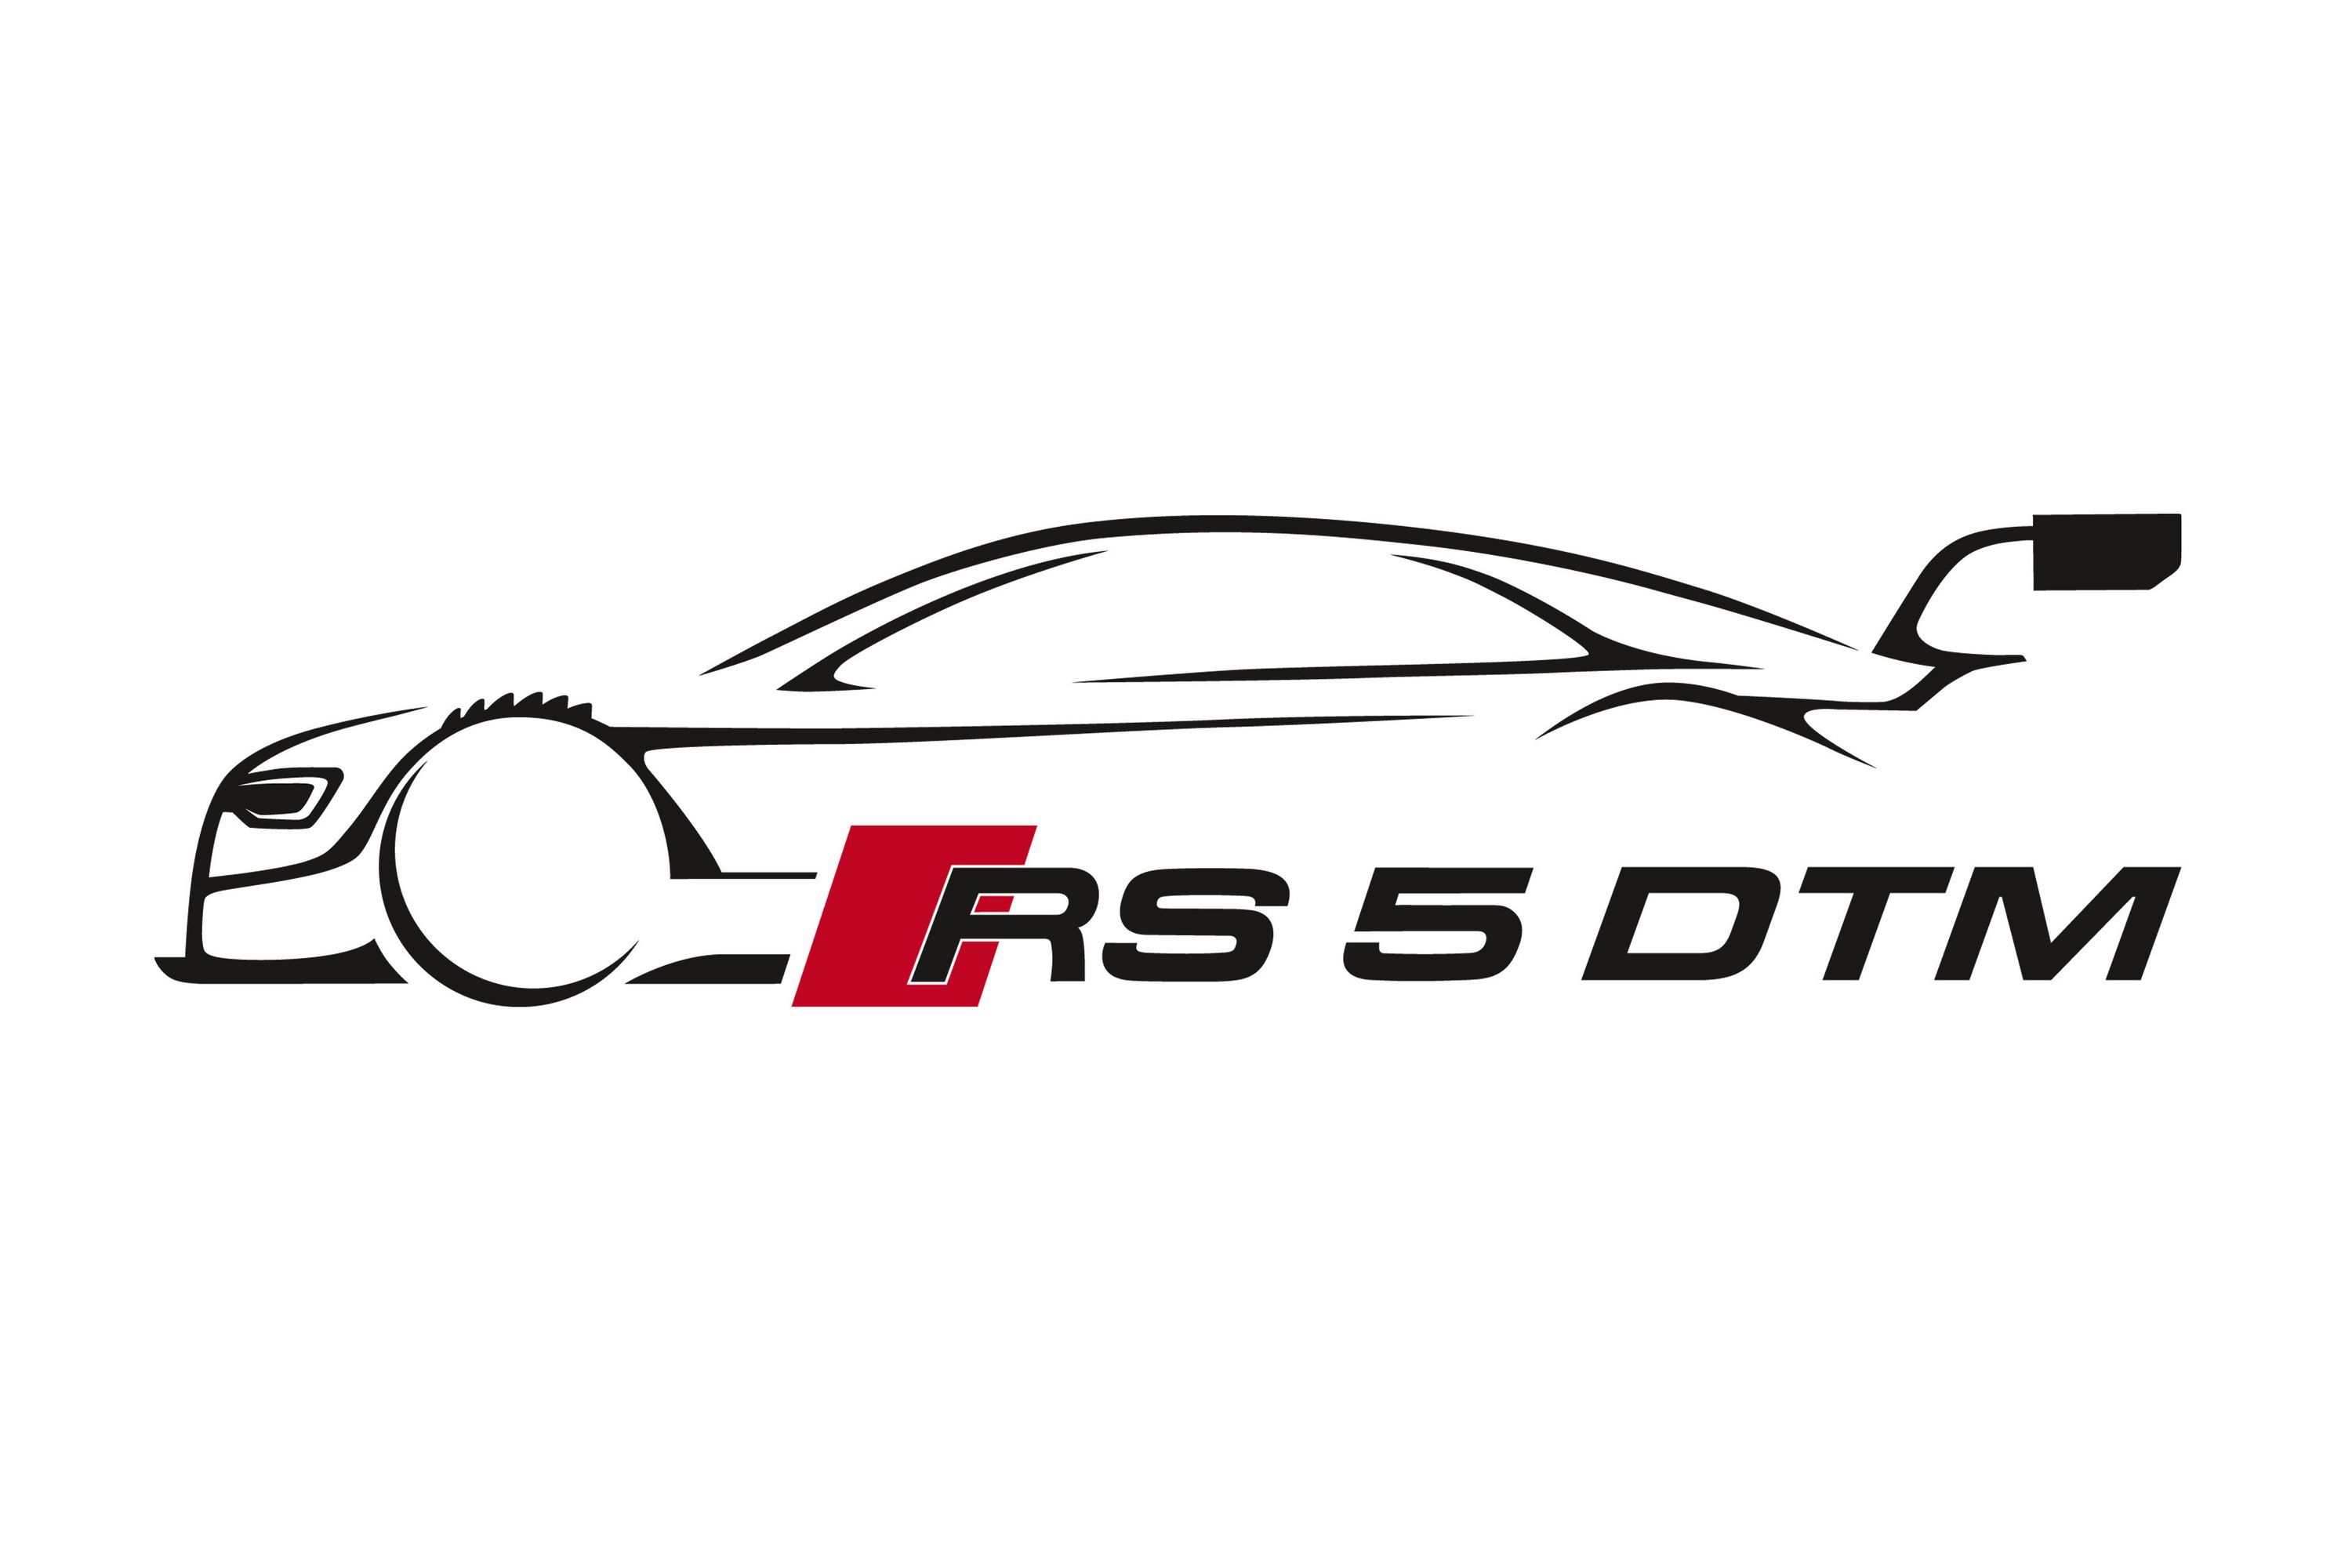 2013 Audi RS5 DTM